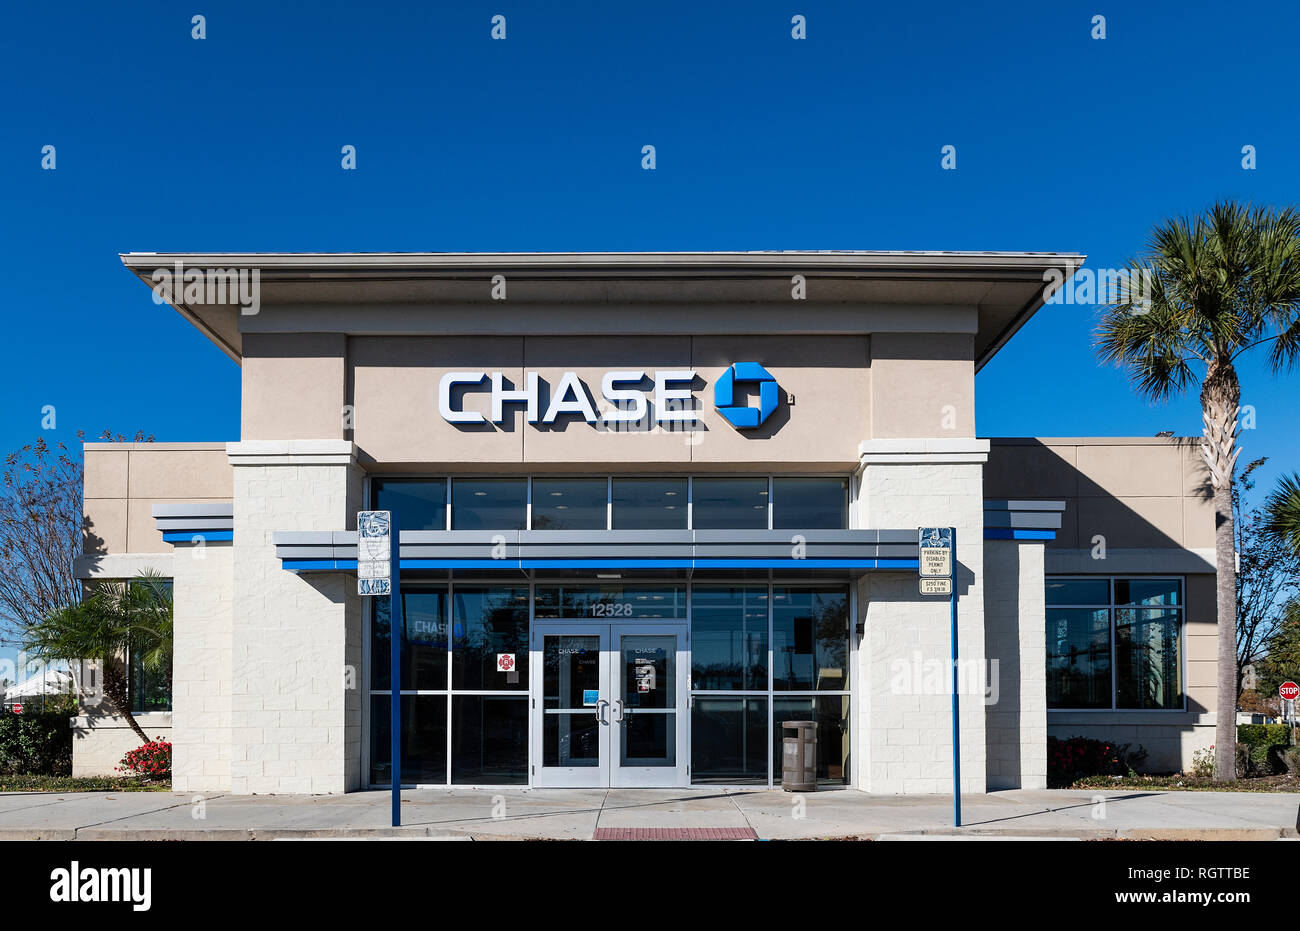 Chase Bank branch, Orlando, Florida, USA. Stock Photo